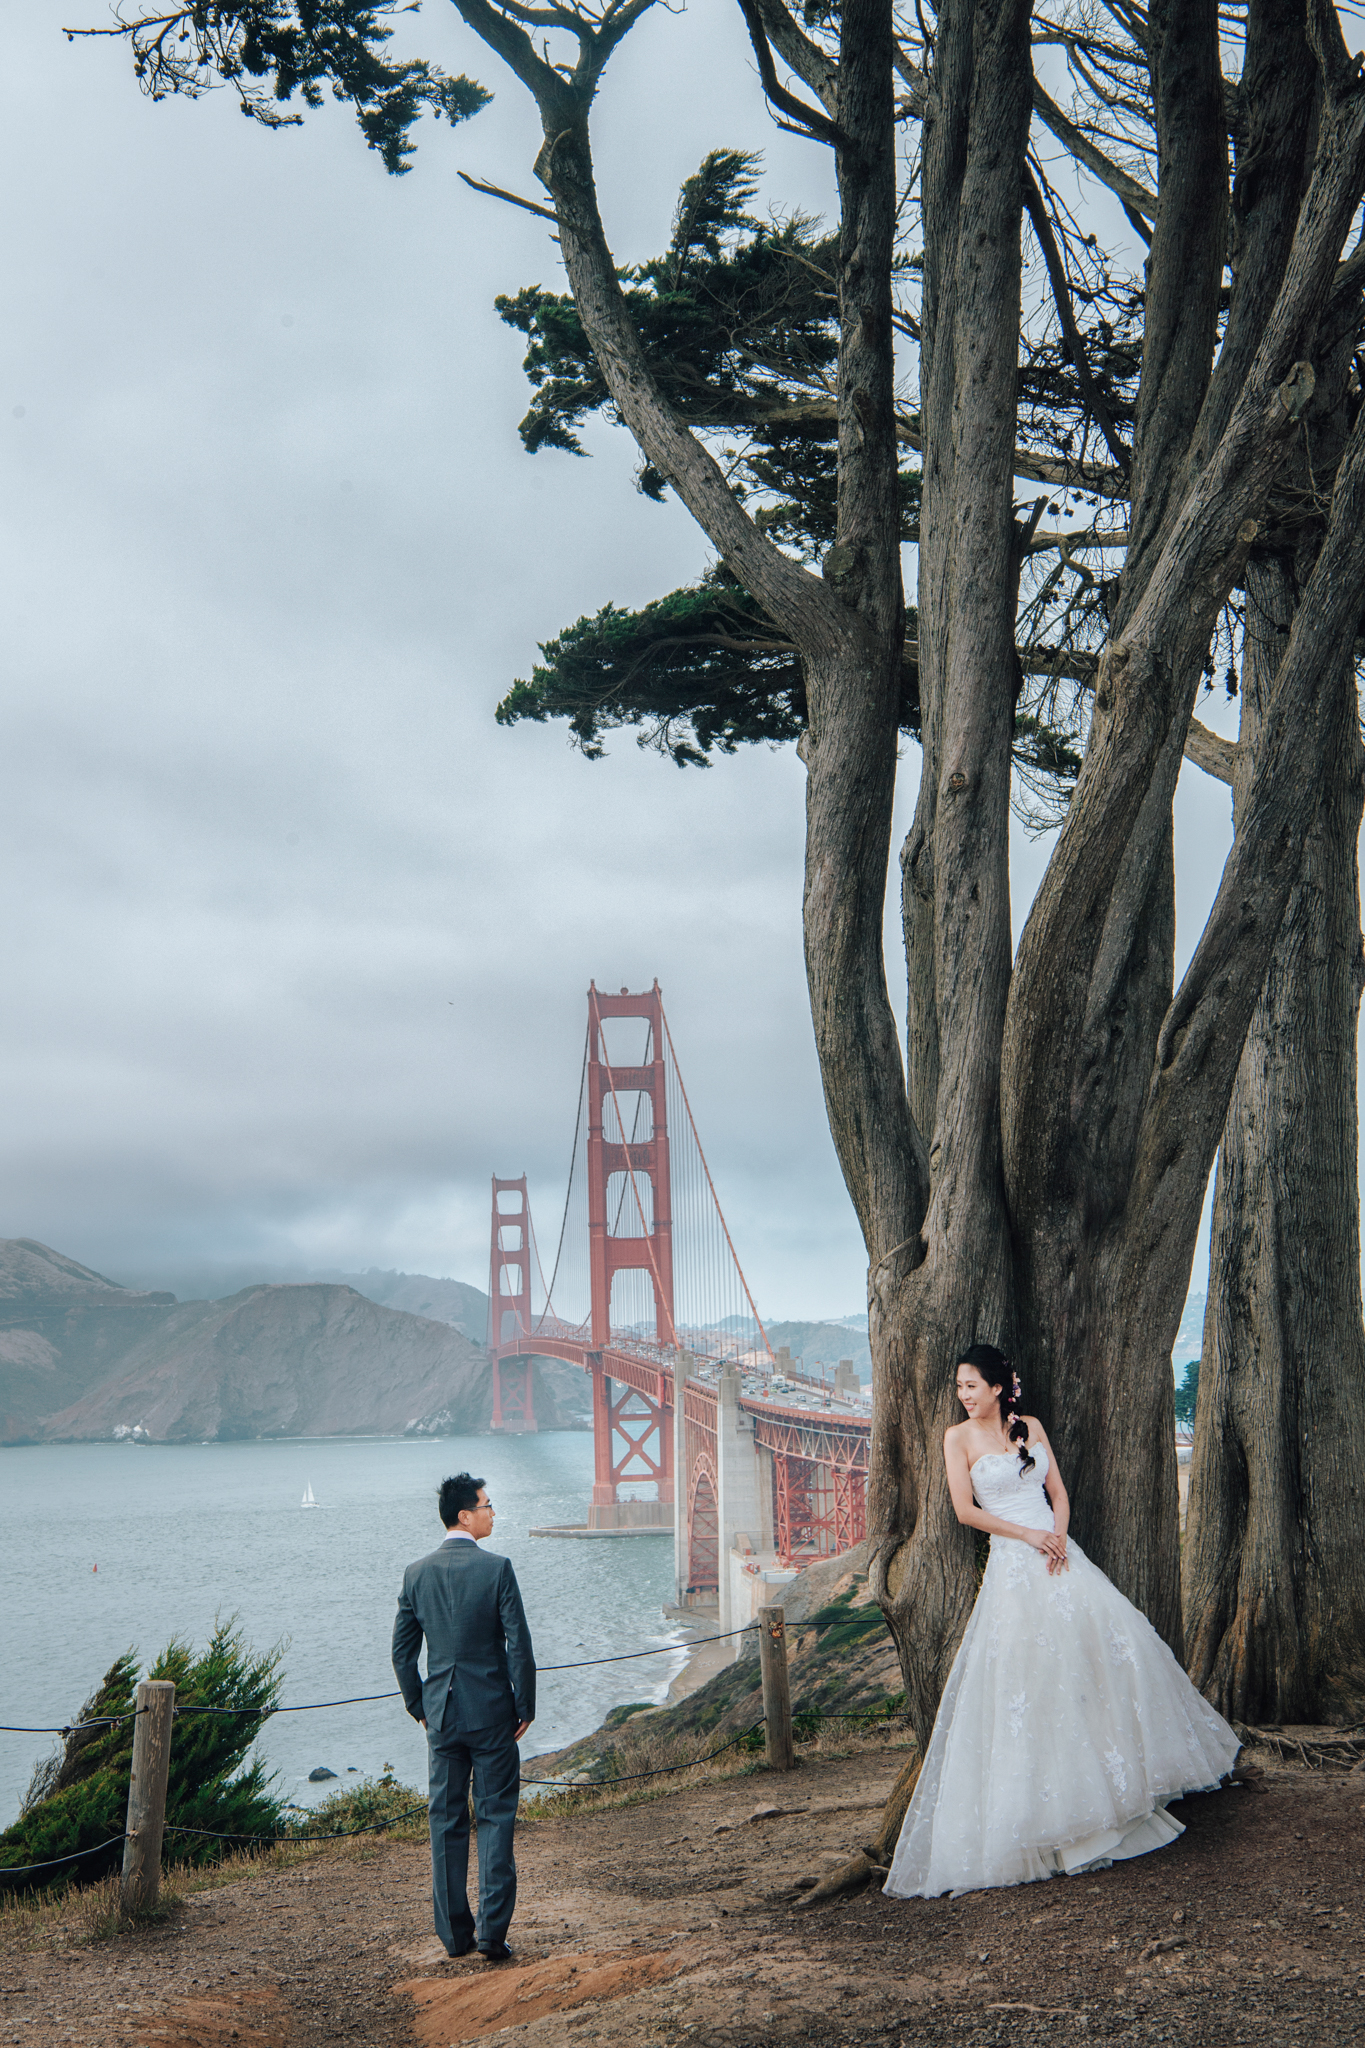 藝術婚禮, Donfer, Donfer Photography, EASTERN WEDDING, San Francisco Pre-Wedding , 海外婚紗, 舊金山海外婚紗, 藝術婚紗